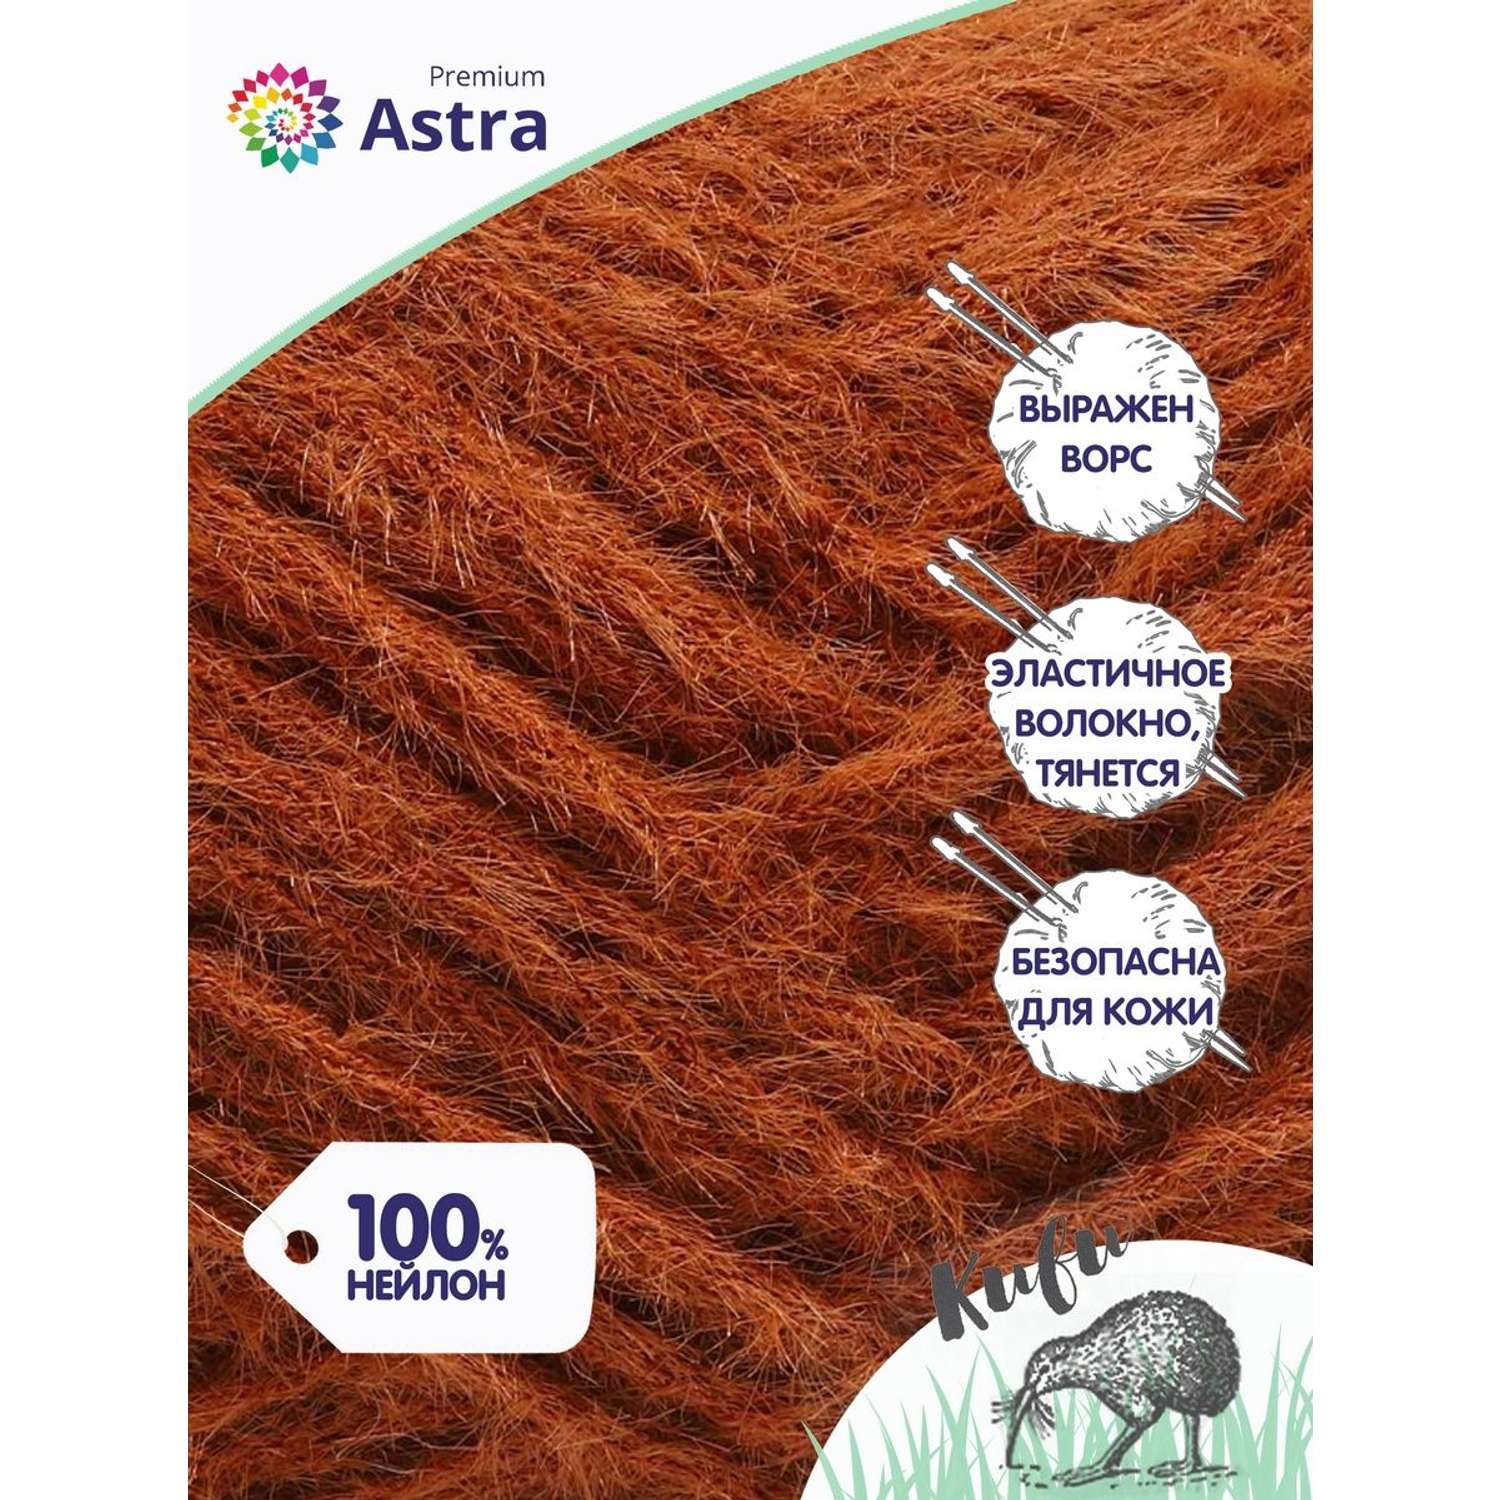 Пряжа для вязания Astra Premium киви фантазийная с выраженным ворсом киви нейлон 100 гр 200 м 06 коричневый 3 мотка - фото 2